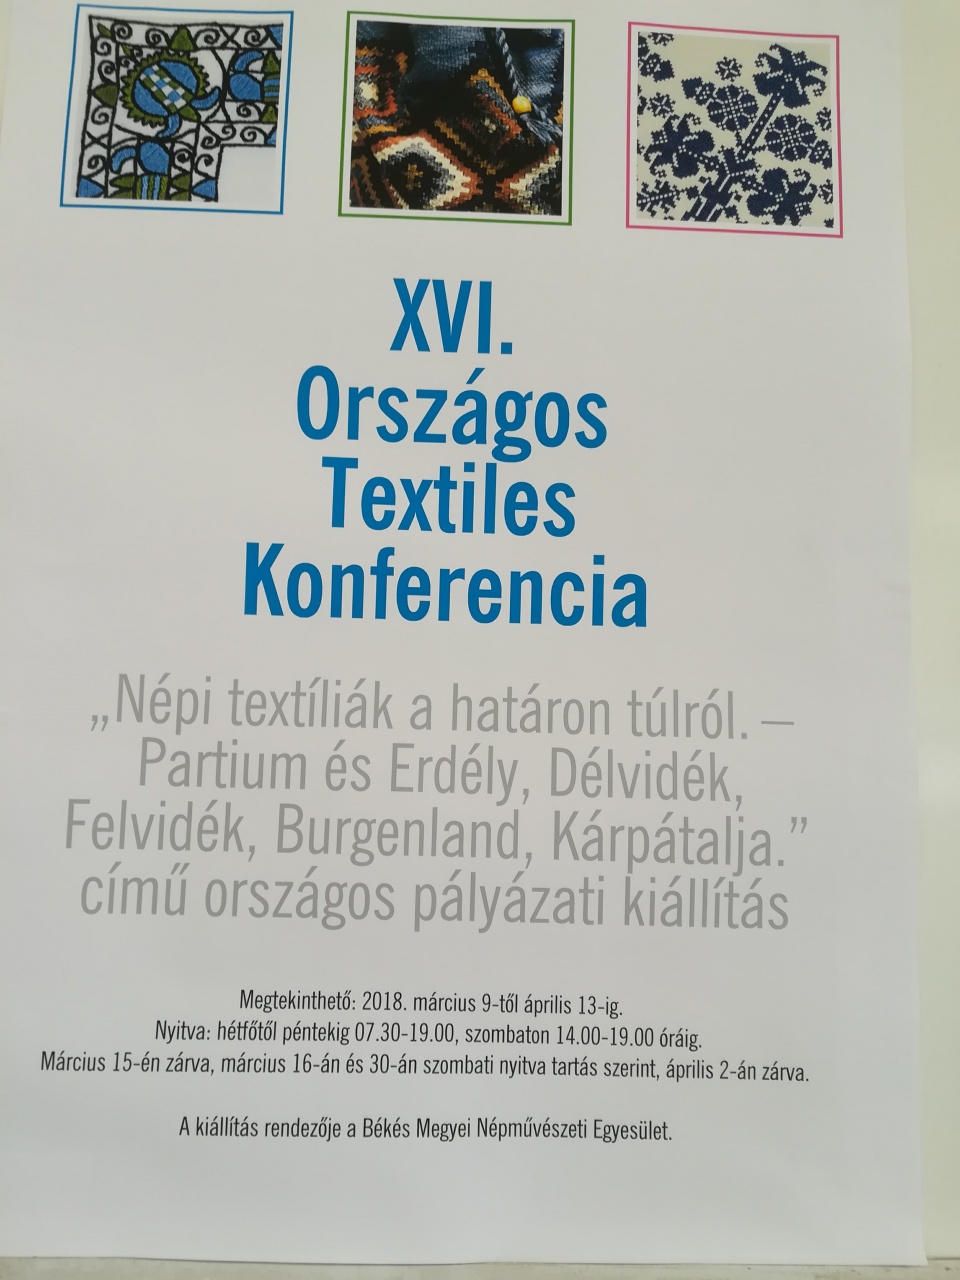 Szent-Györgyis lányok a XVI. Országos Textiles Konferencián